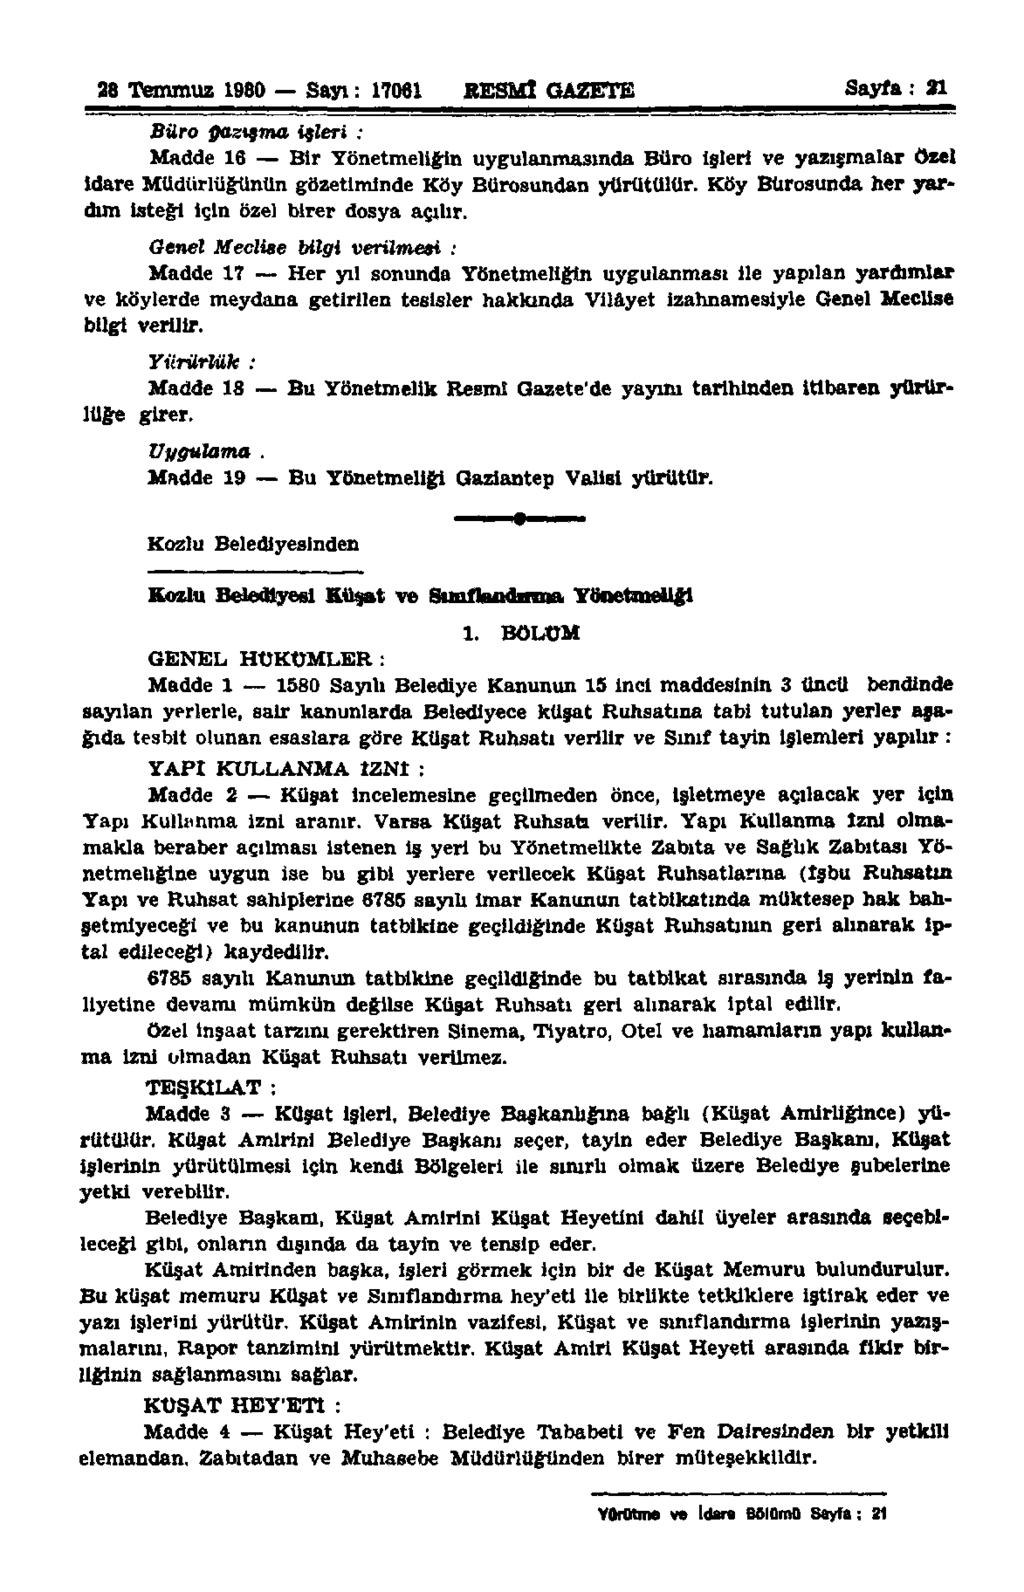 28 Temmuz 1980 Sayı: 17061 RESMÎ GAZETE Sayfa: 21 Büro ffaztsma işleri ; Madde 16 Bir Yönetmeliğin uygulanmasında Büro işleri ve yazışmalar özel İdare Müdürlüğünün gözetiminde Köy Bürosundan